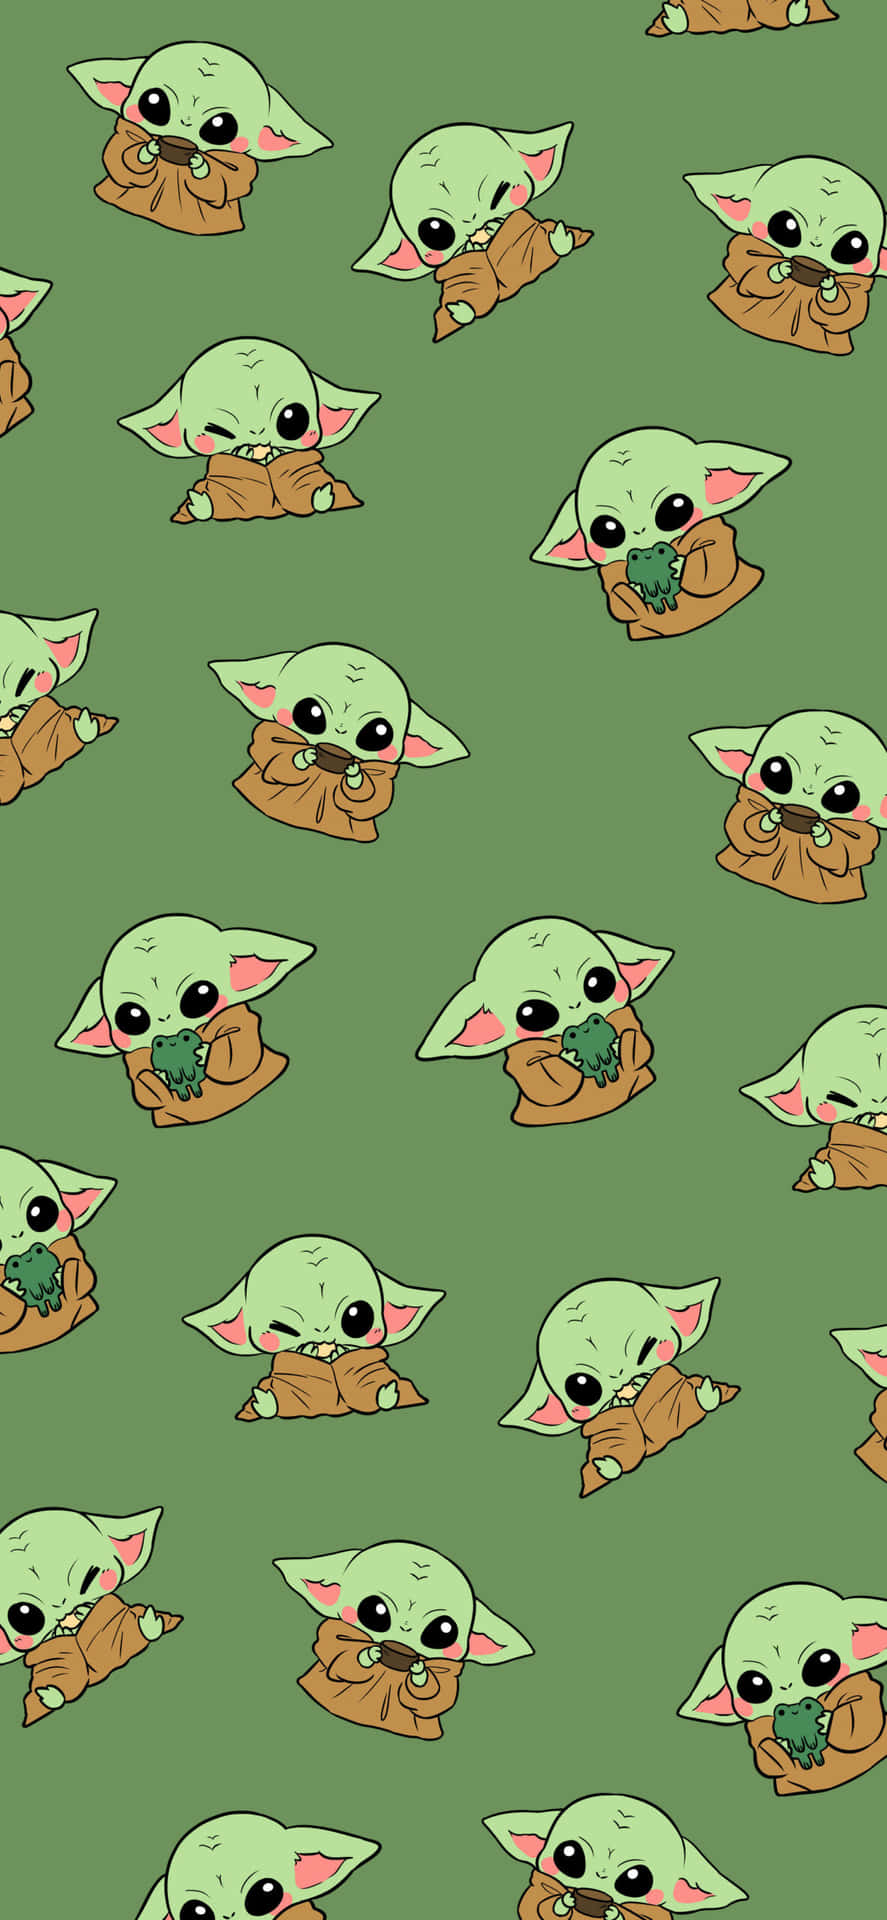 Ettmönster Av Baby Yoda På En Grön Bakgrund. Wallpaper